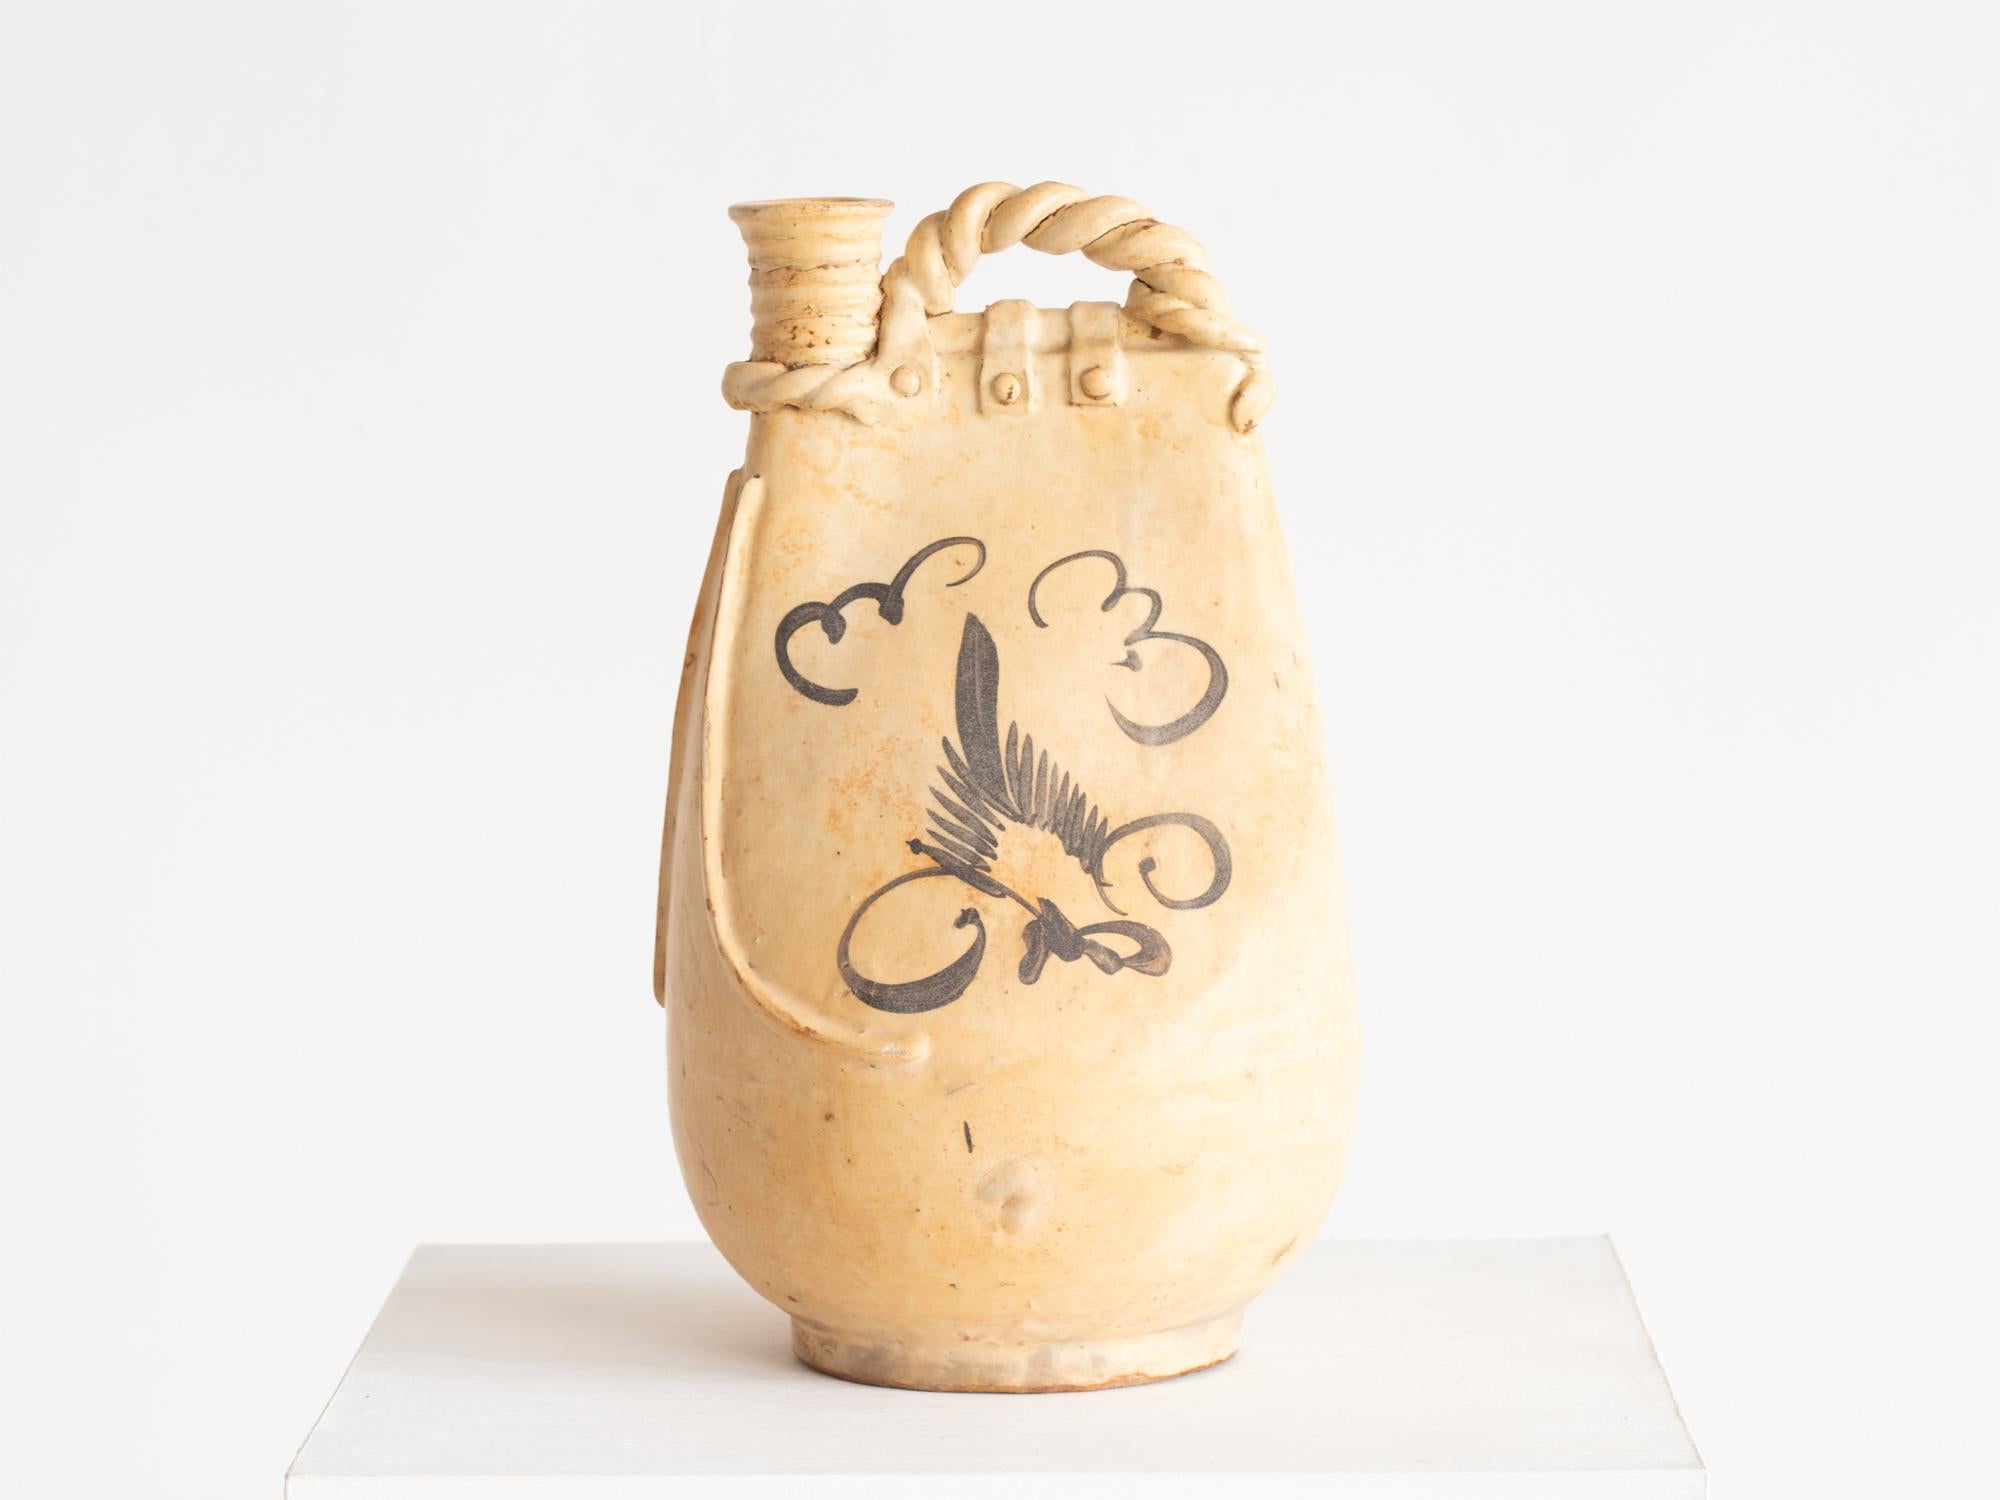 Un récipient en céramique à glaçure glacée cizhou ware, inspiré d'un récipient à eau en cuir utilisé par les nomades dans le nord de la Chine. Chinois, probablement de la dynastie Song (960 à 1279 ADS).

Perte minime au niveau de la